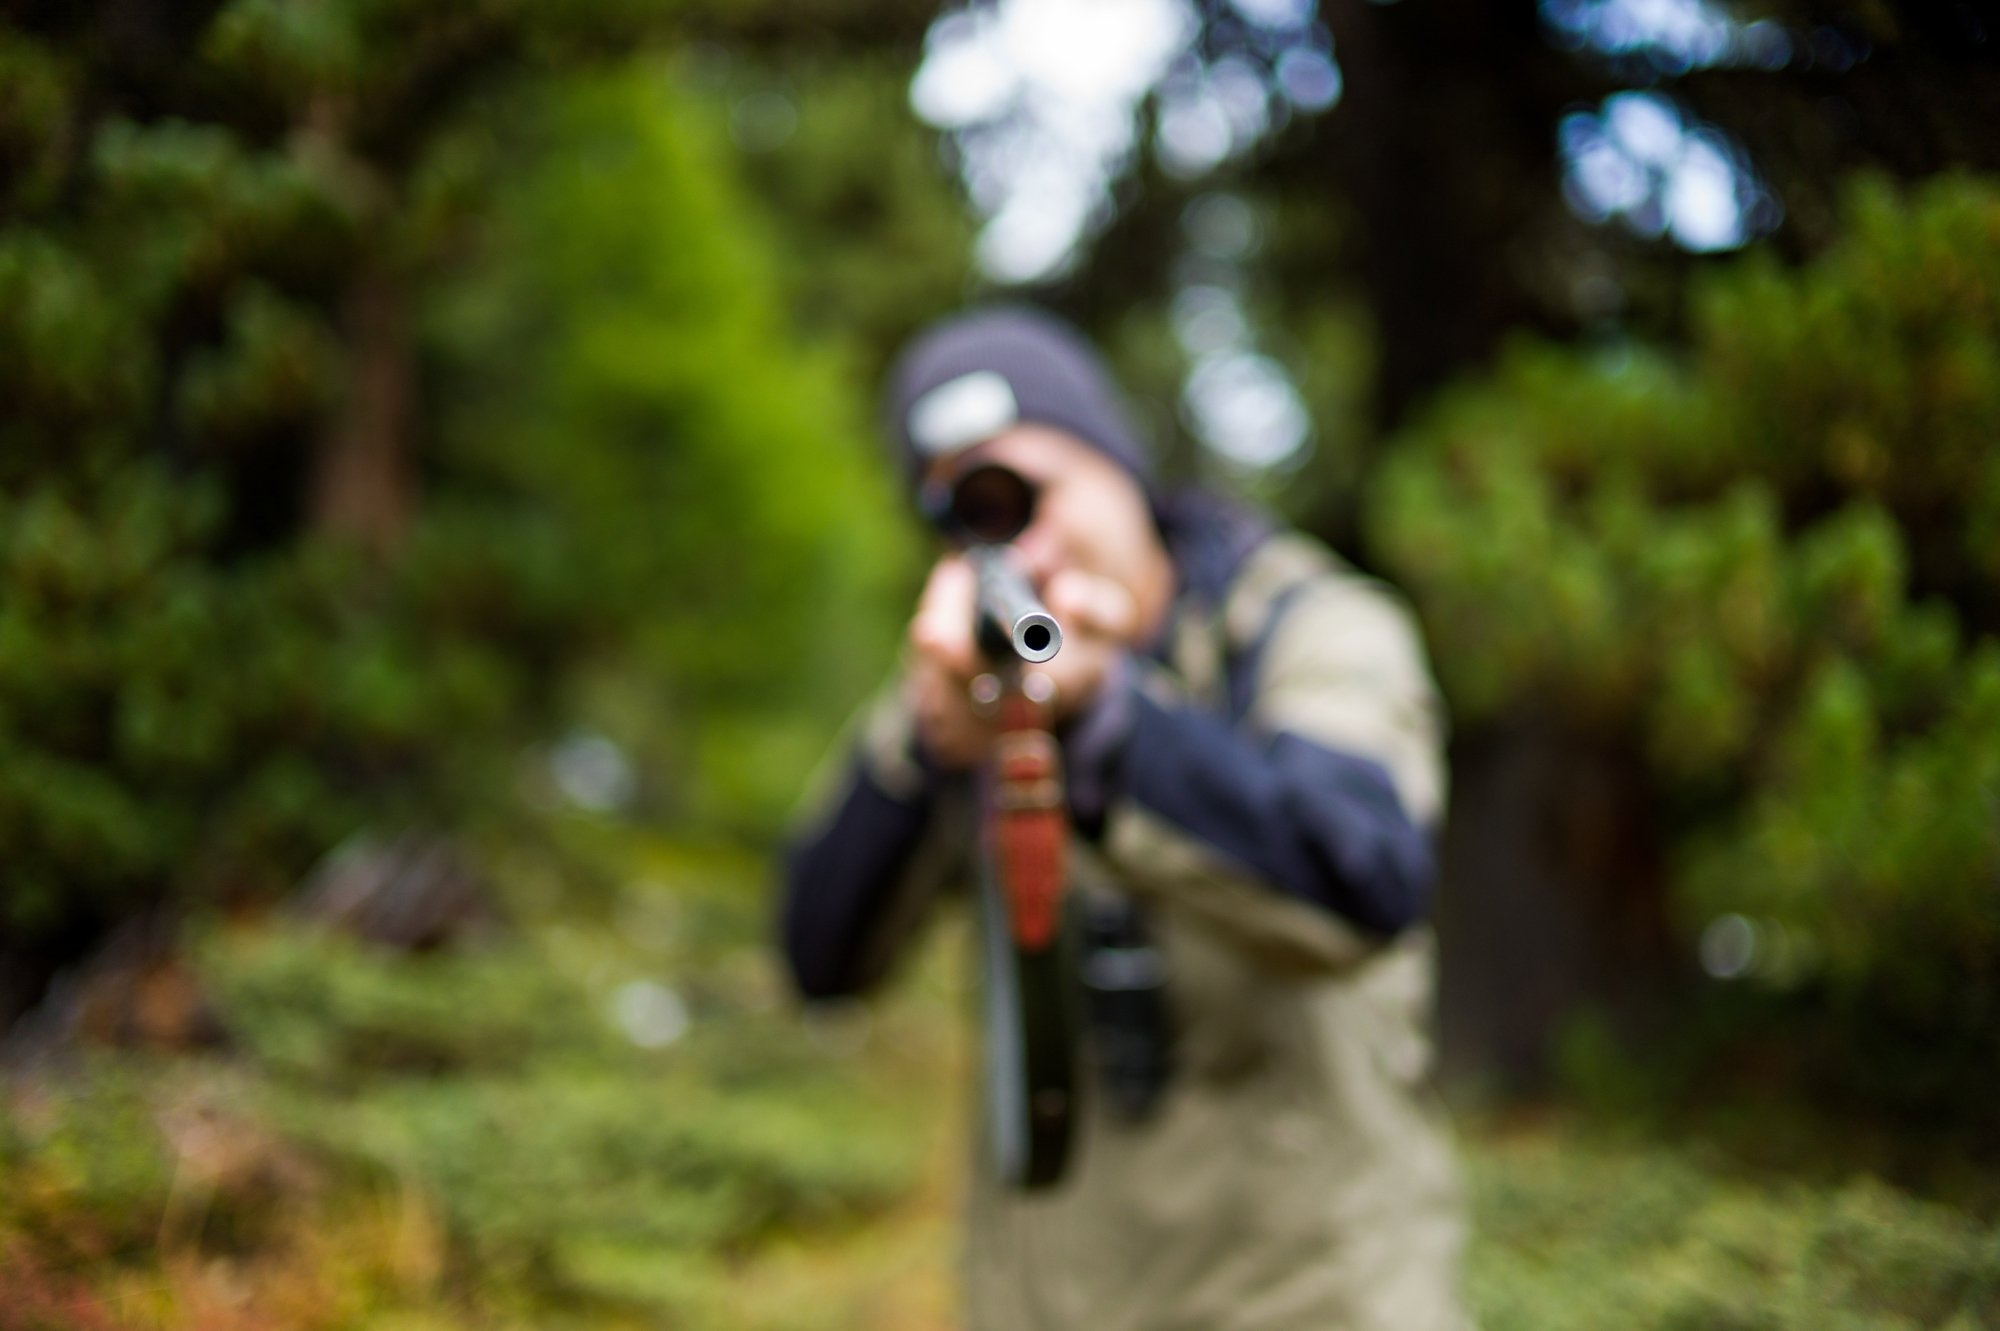 Un jeune chasseur avait braqué, par erreur, le vététiste Roger Poggiali dans la forêt de Chaumont (image d'illustration).